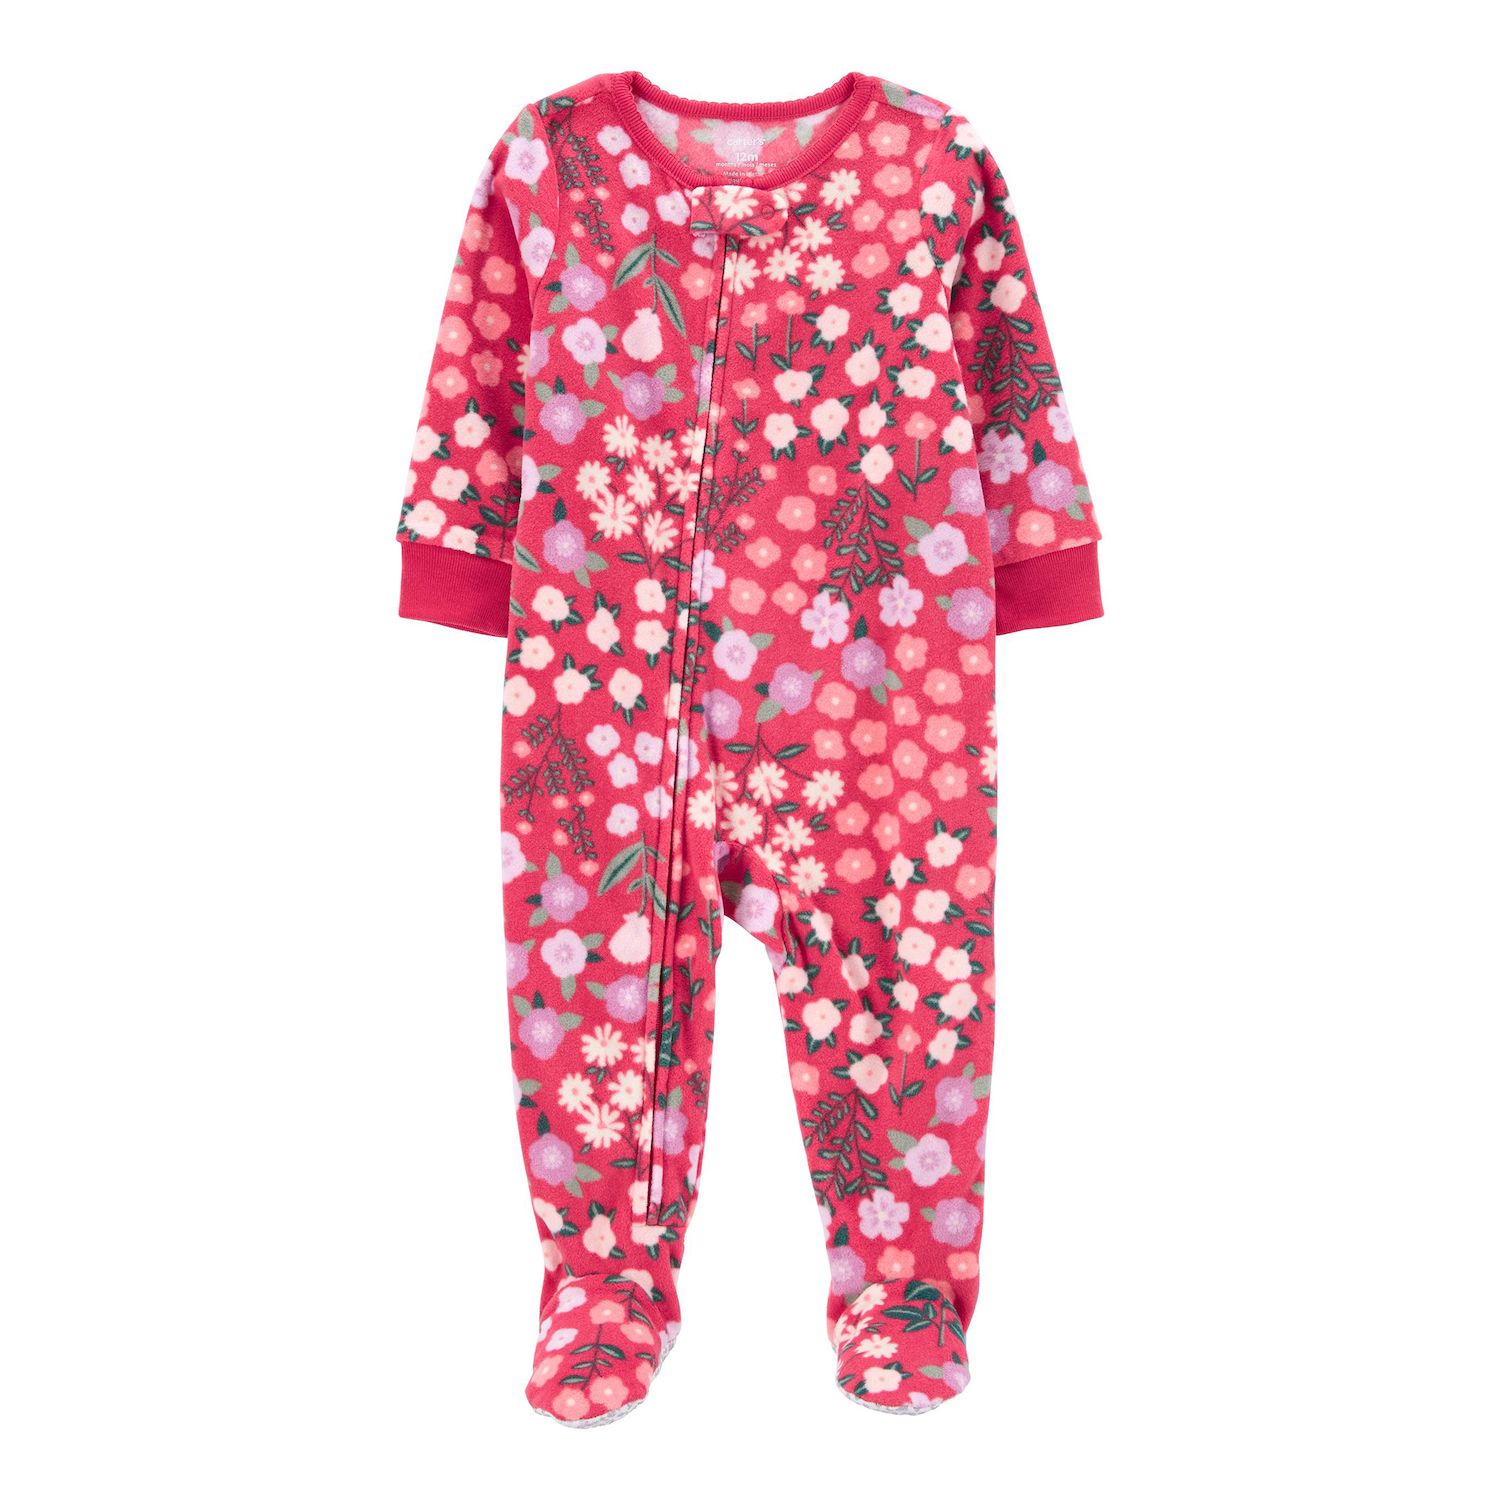 Toddler Carter's Polar Bear Fleece Top & Bottoms Pajama Set